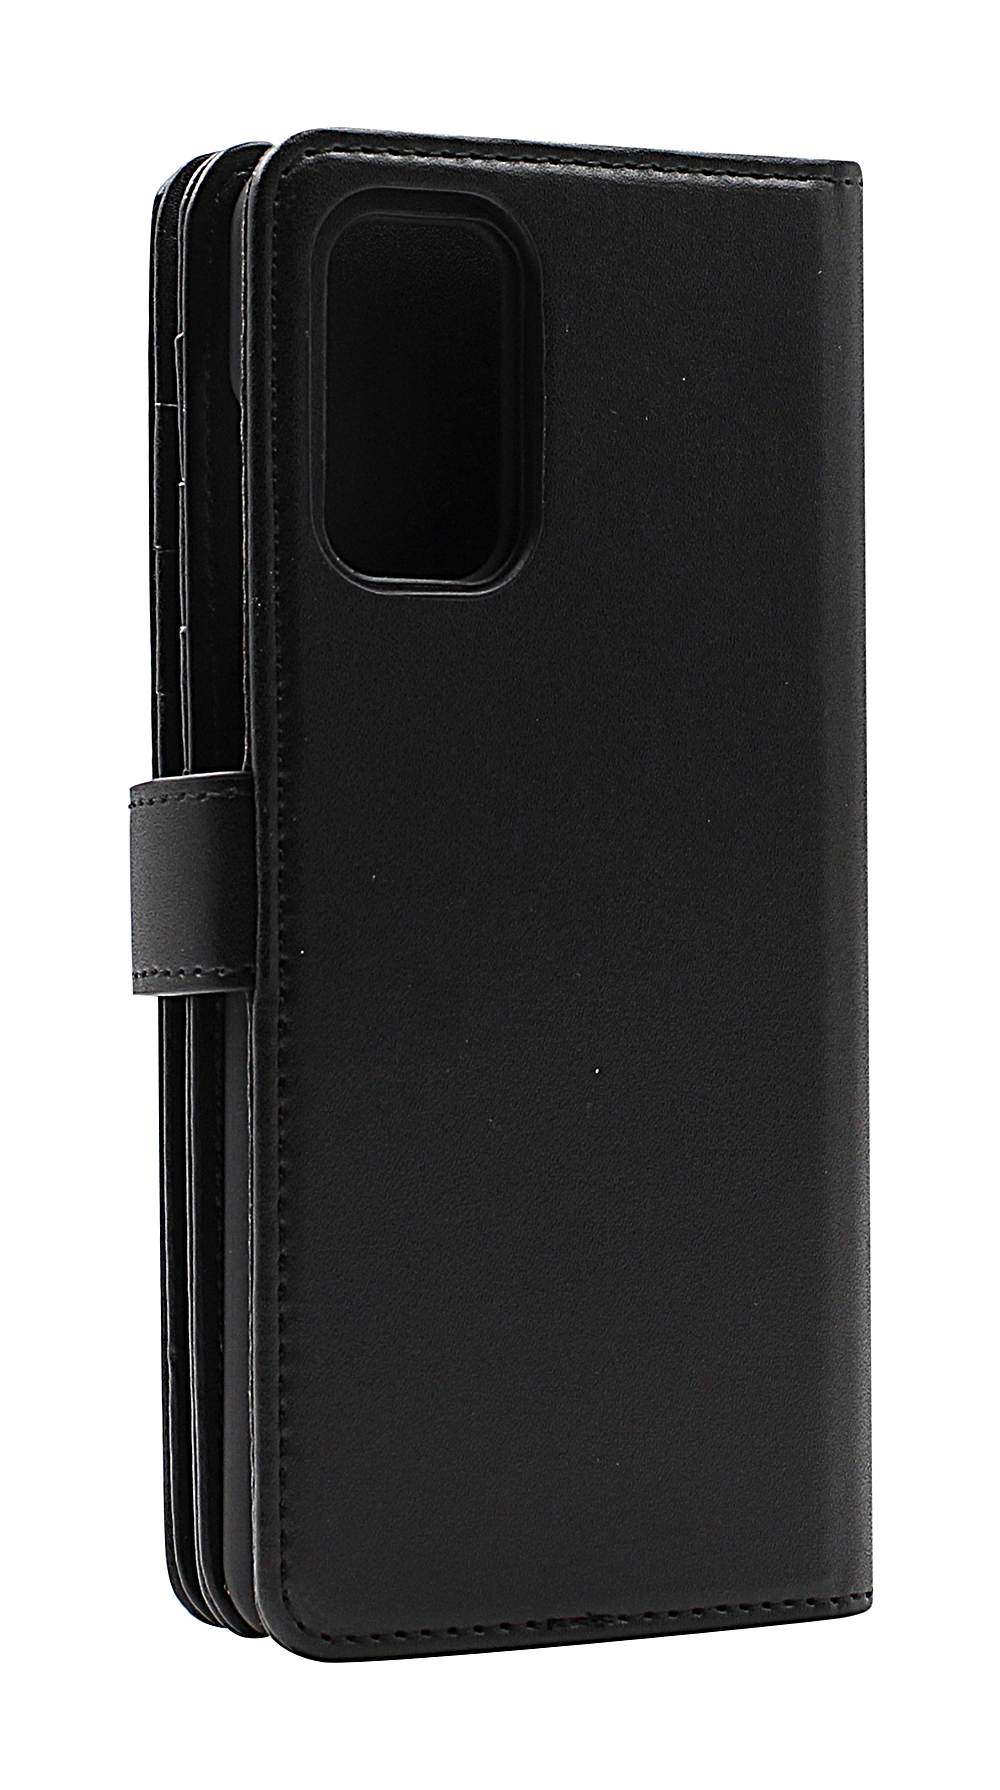 Skimblocker XL Magnet Wallet Samsung Galaxy A32 4G (SM-A325F)